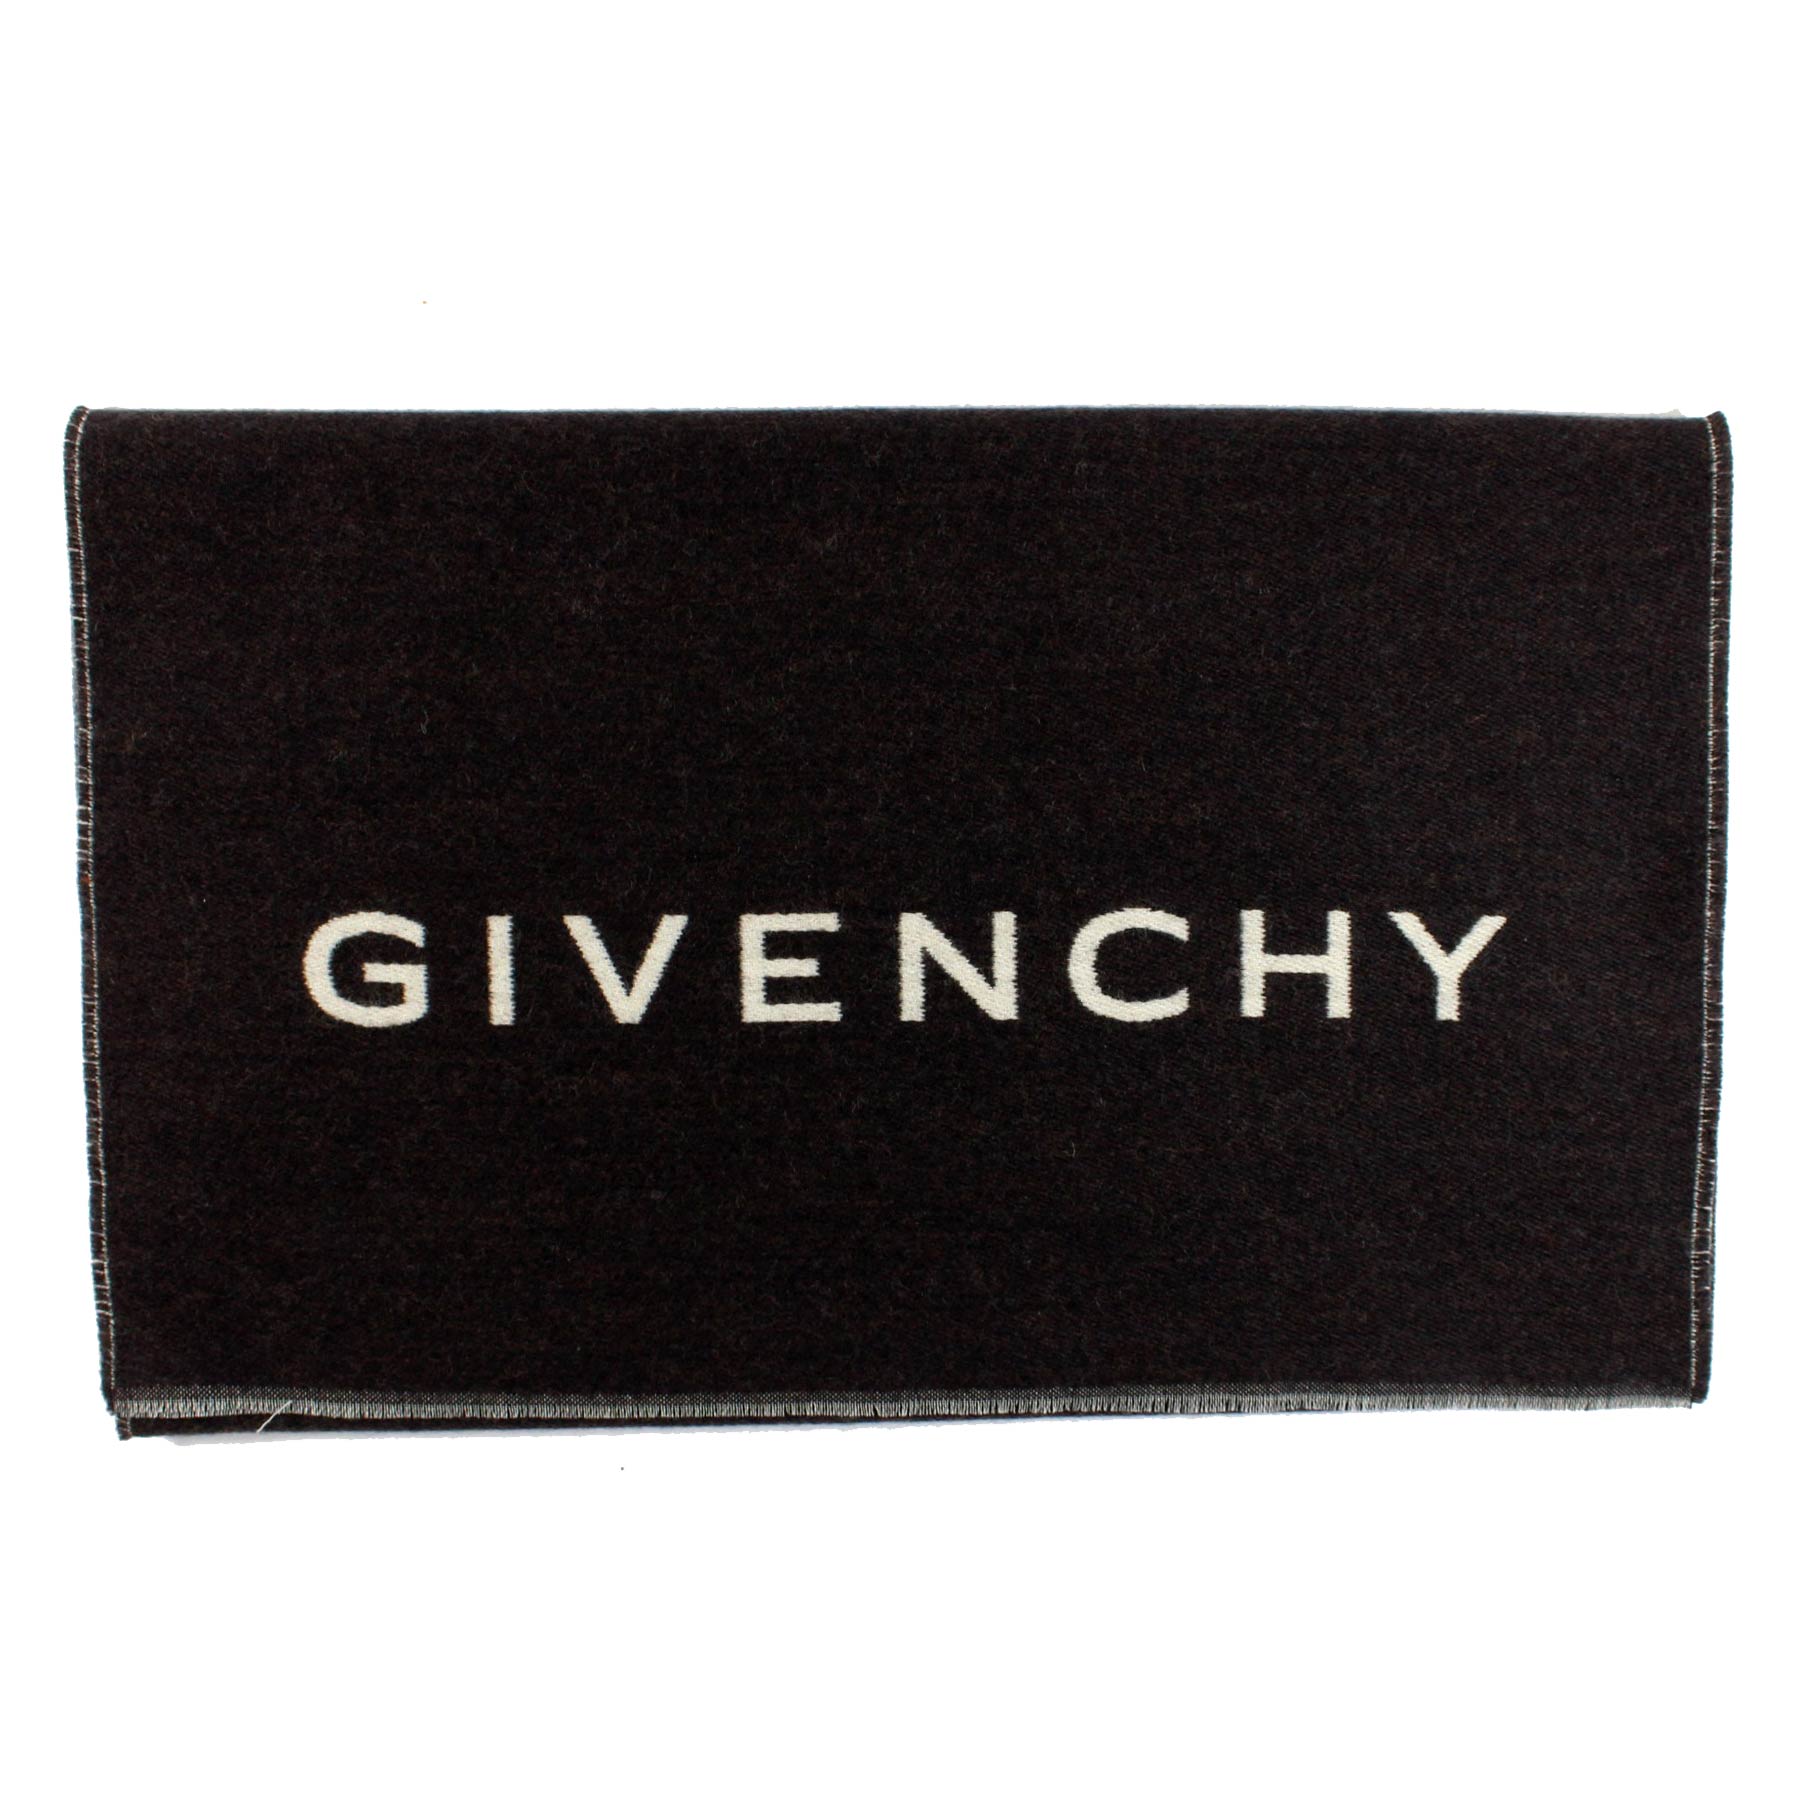 Givenchy Scarf Black White Logo Design - Wool Silk Shawl SALE